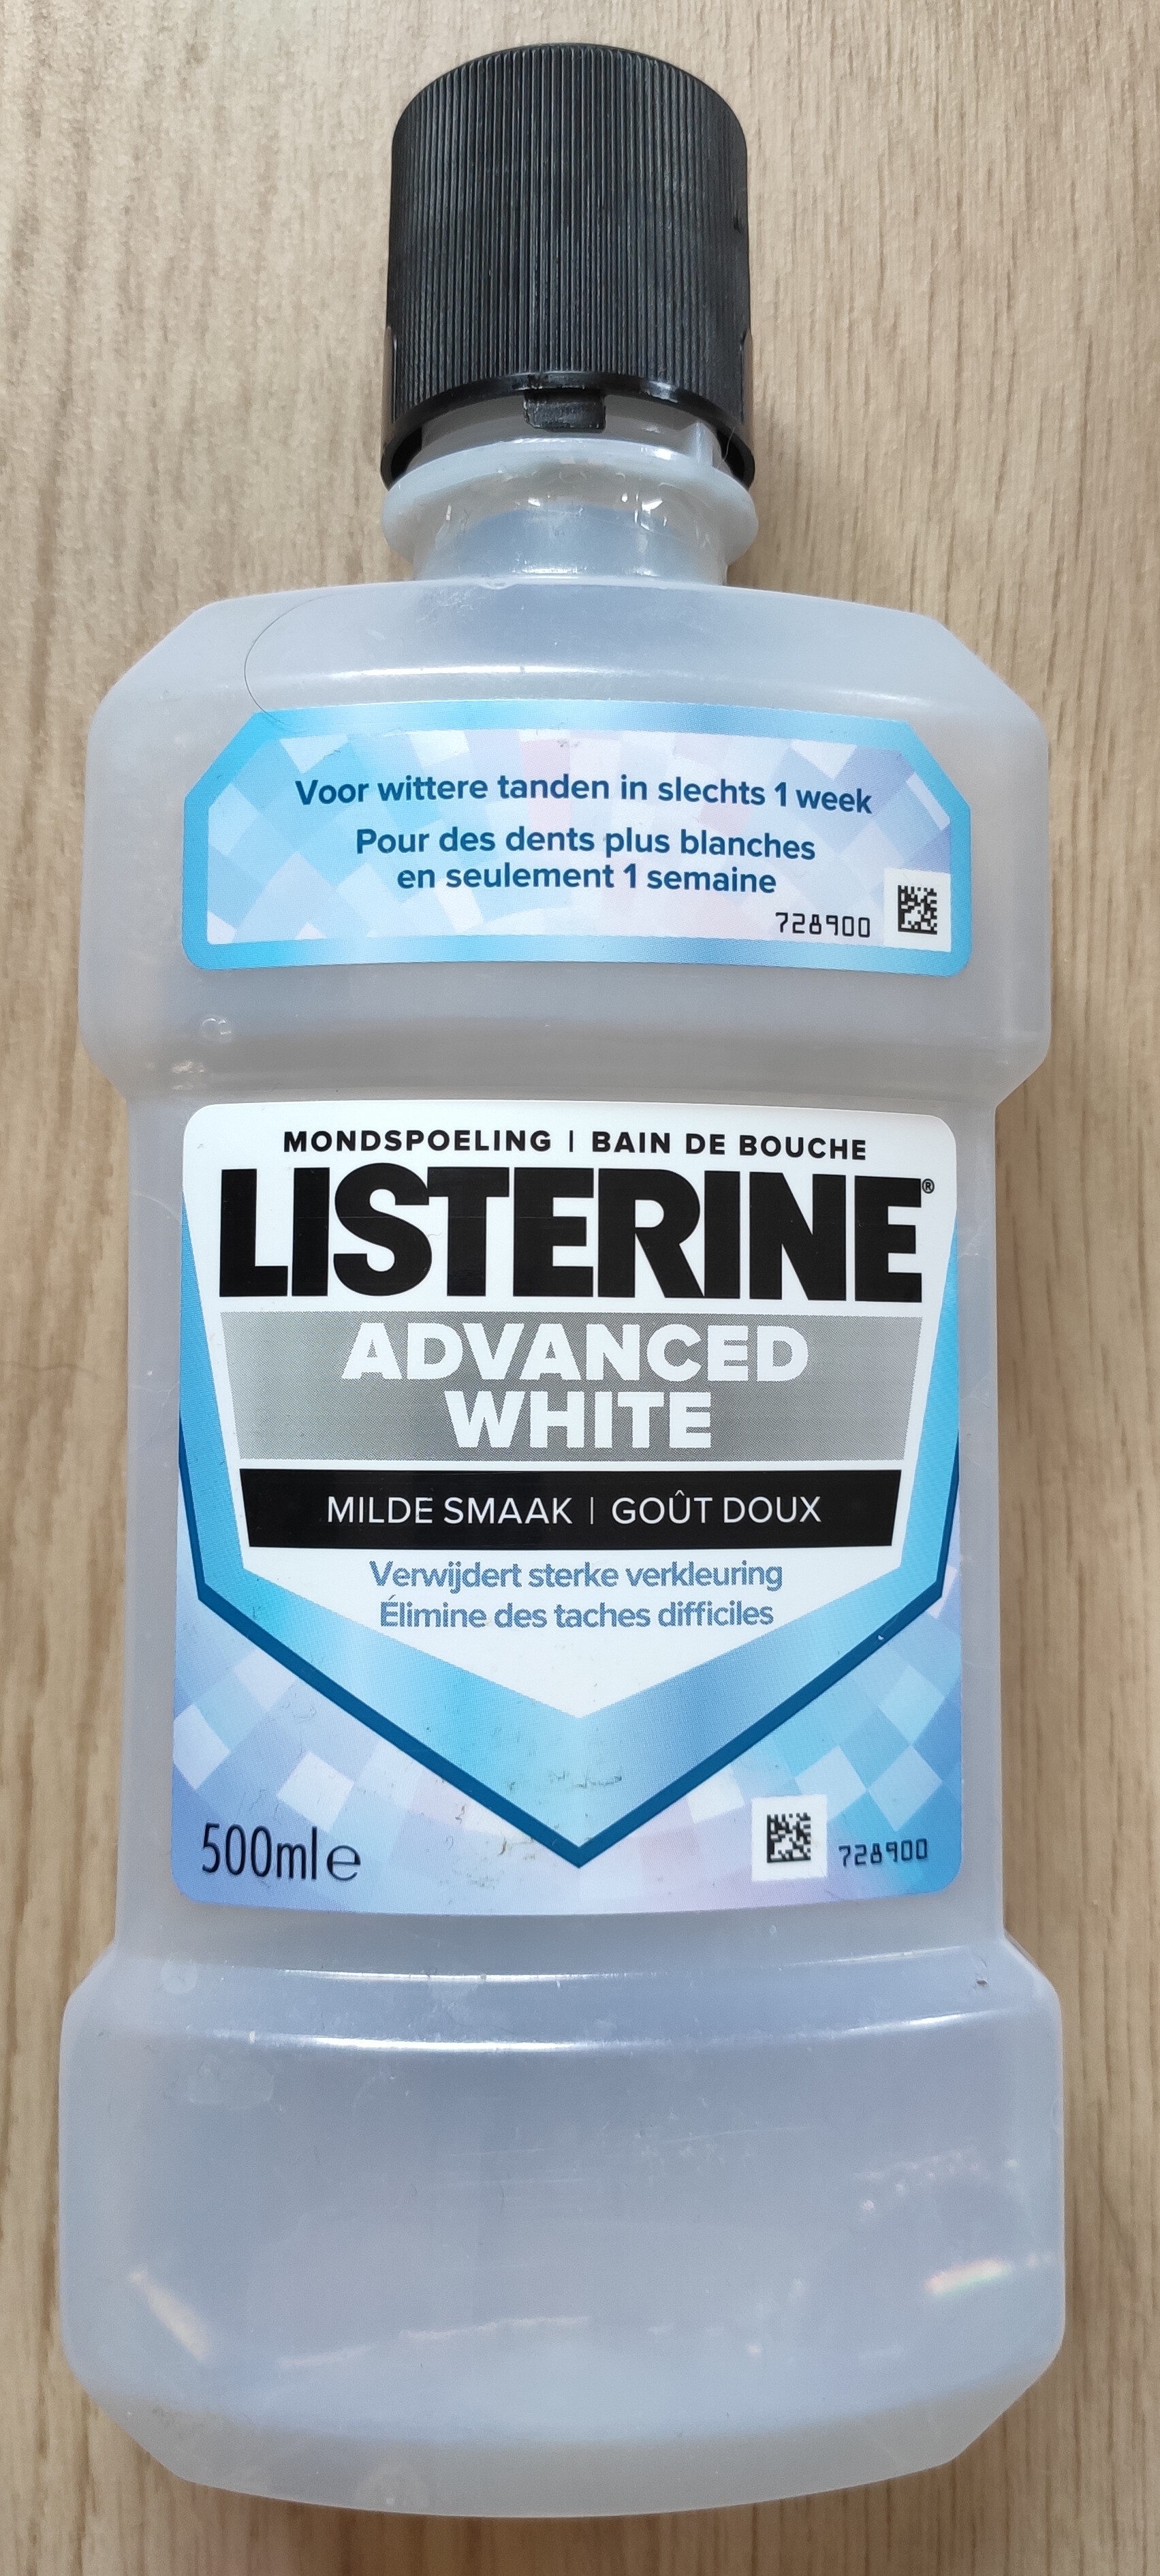 Listerine Advanced White - Produkto - fr